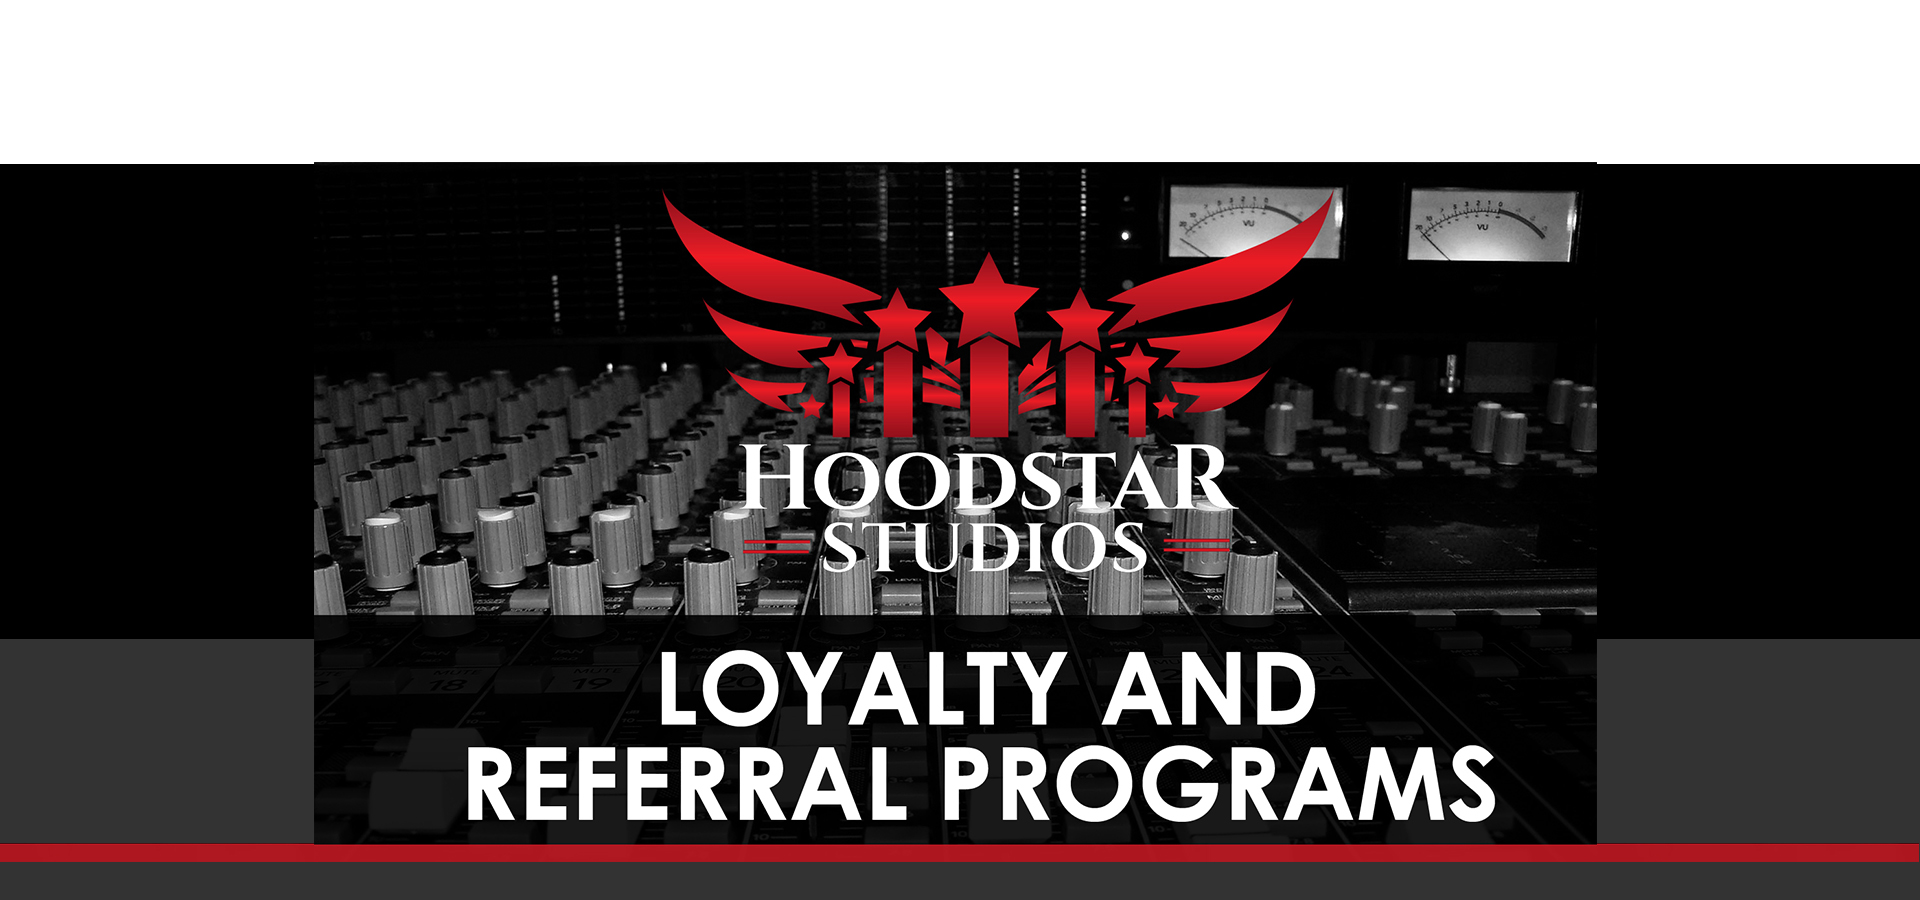 Hoodstar Studios Loyalty Referrals2